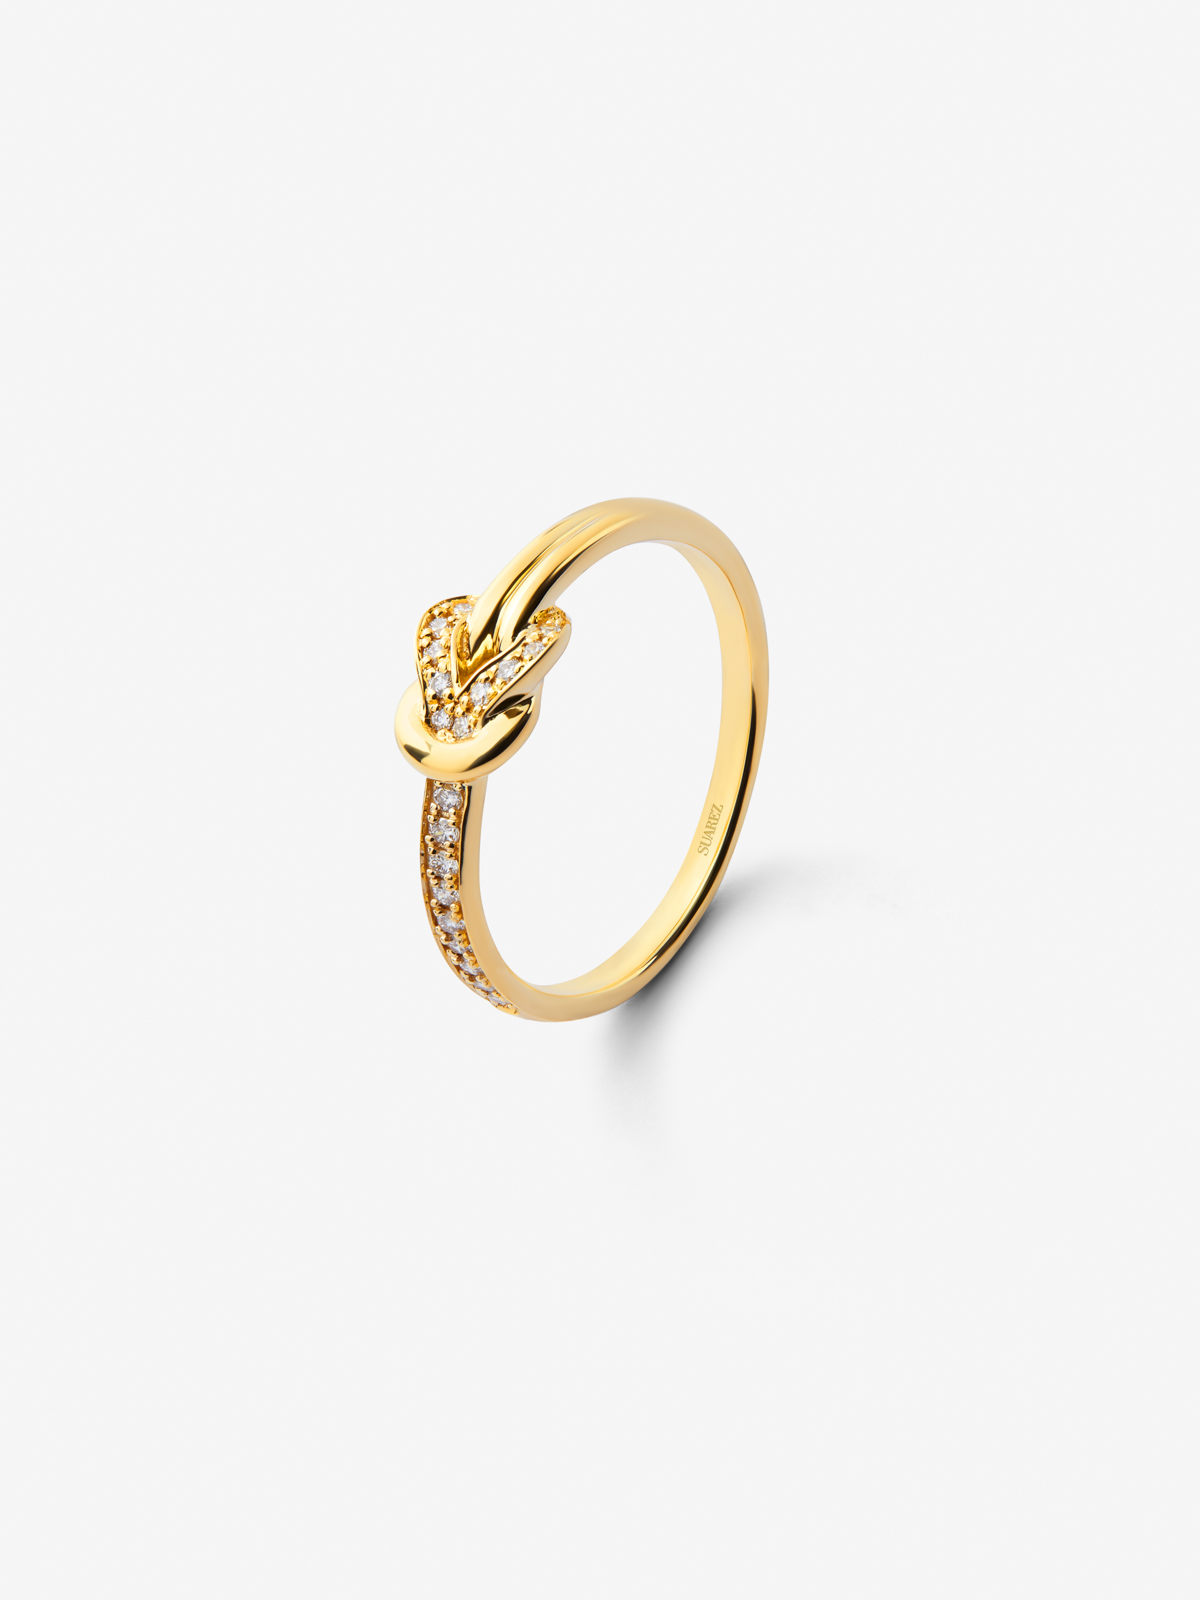 Anillo de oro amarillo de 18K con diamantes blancos en talla brillante de 0,05 cts y forma de nudo